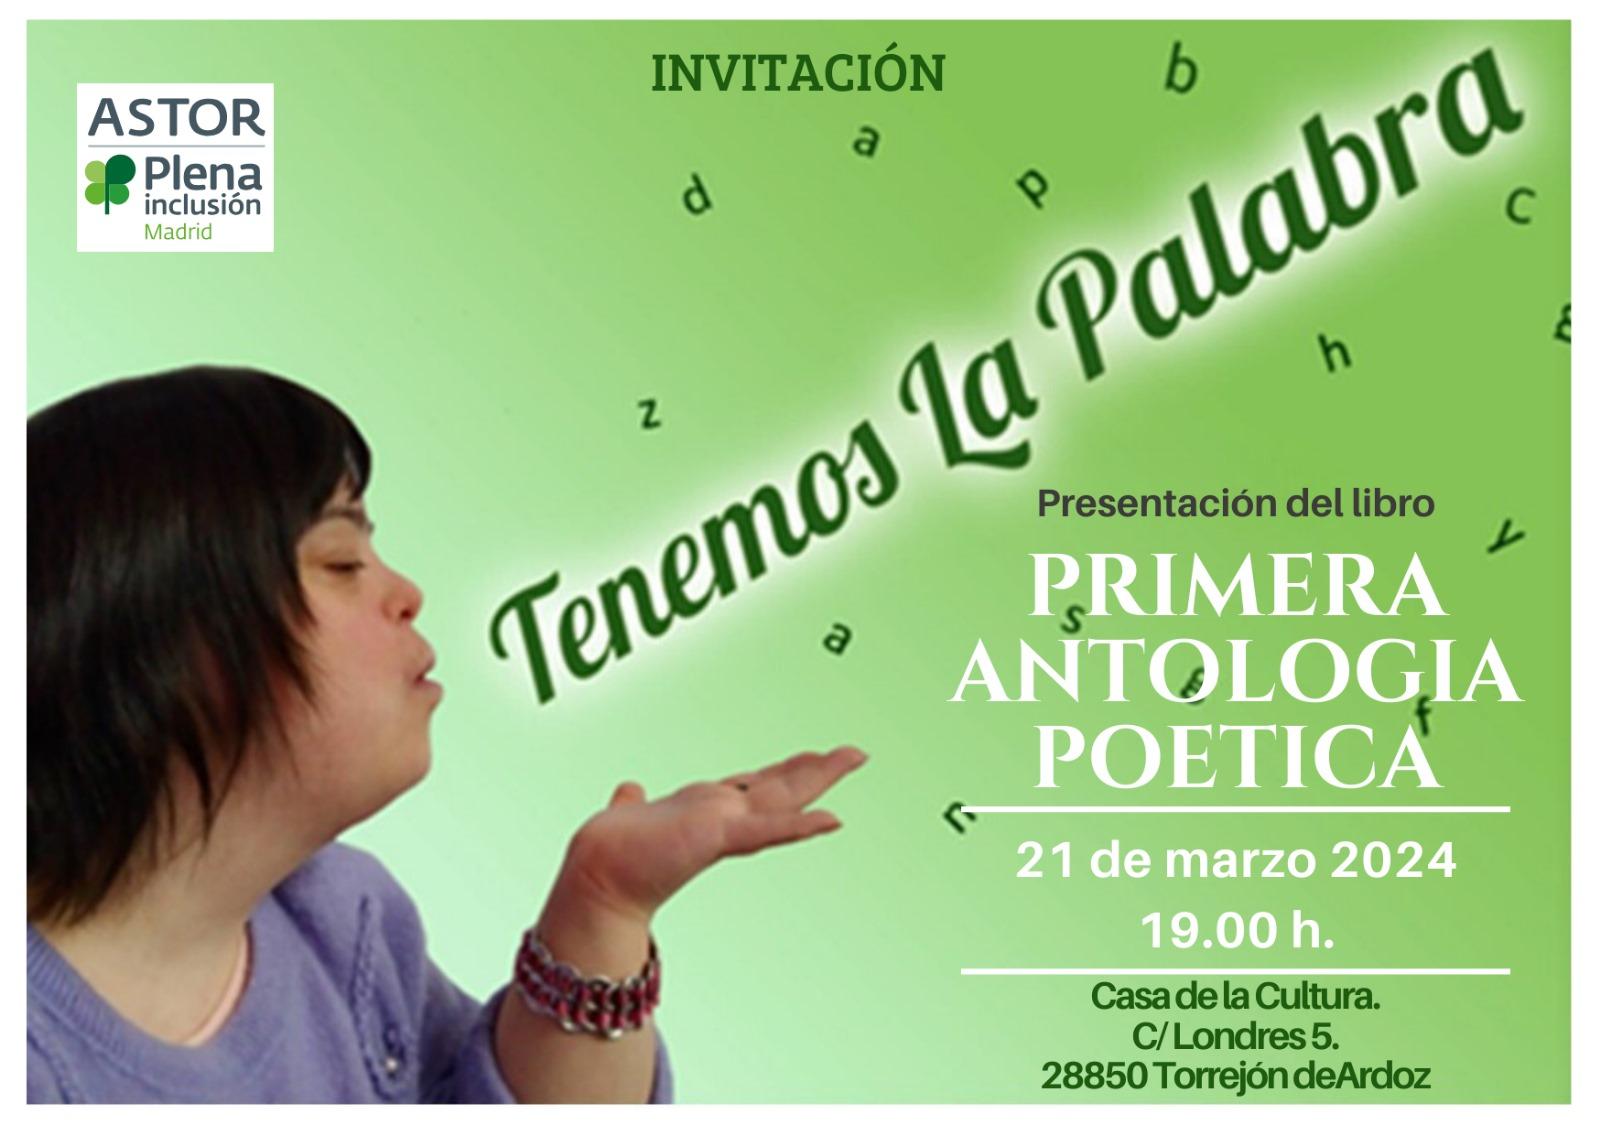 Presentación del libro ‘Primera Antología Poética’ de la Fundación ASTOR. Torrejón, 21 de marzo